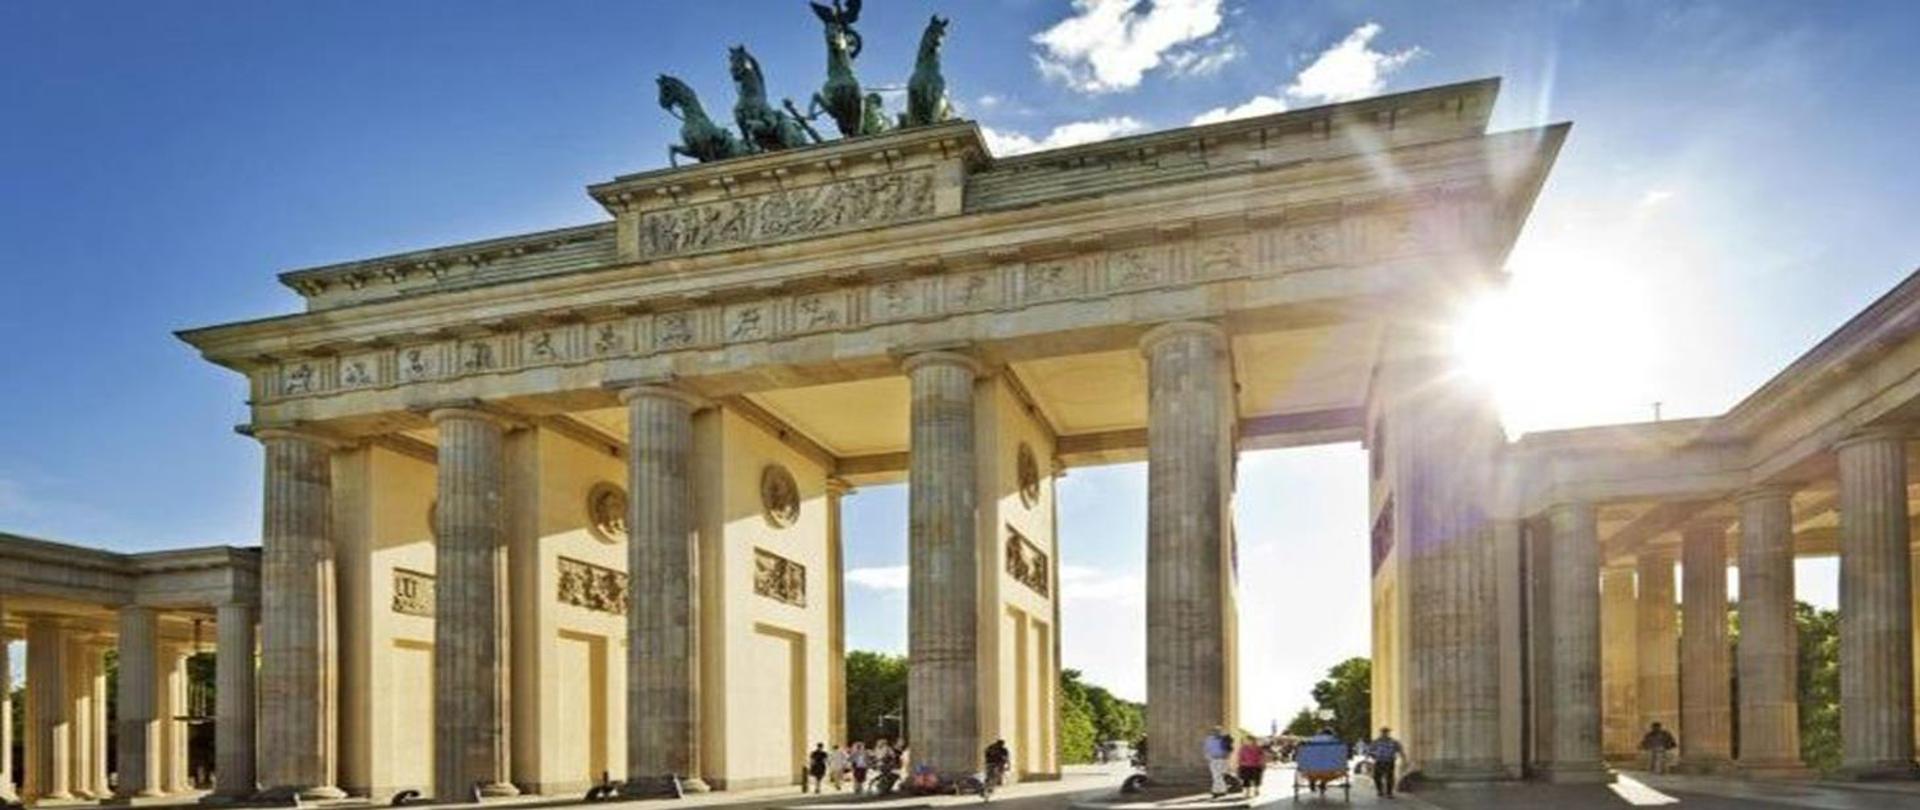 Zdjęcie Bramy Brandenburskiej zabytkowej budowli w Berlinie, zaprojektowanej przez niemieckiego architekta Carla Gottharda Langhansa. Zdjęcie zrobione w pogodny dzień.